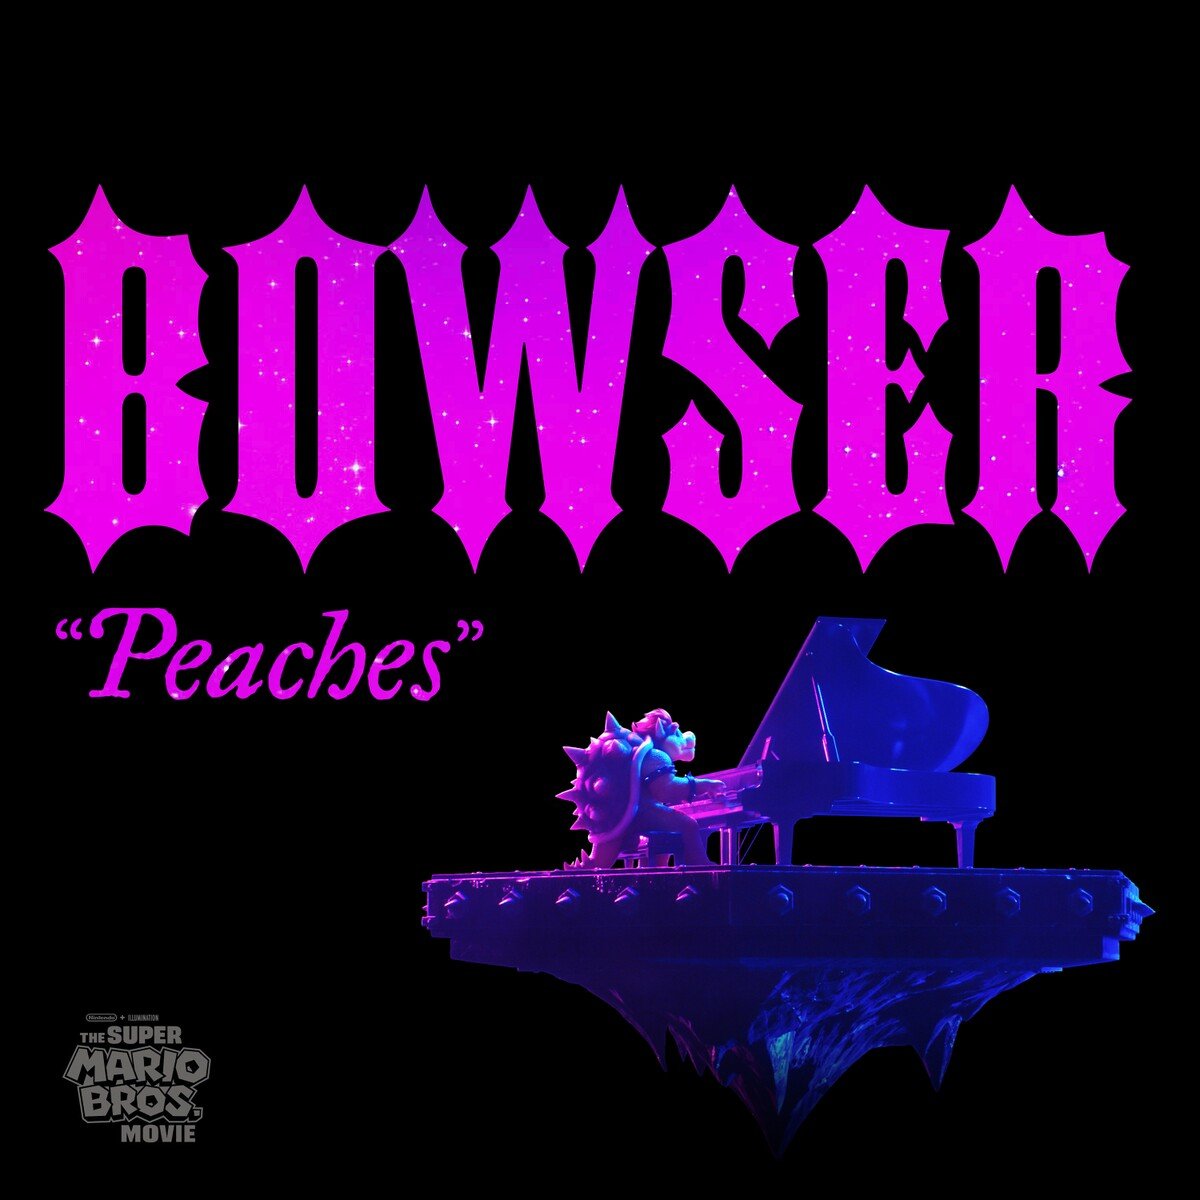 Peaches, Peaches, Peaches - Bowser Peaches song 🎵 #peaches